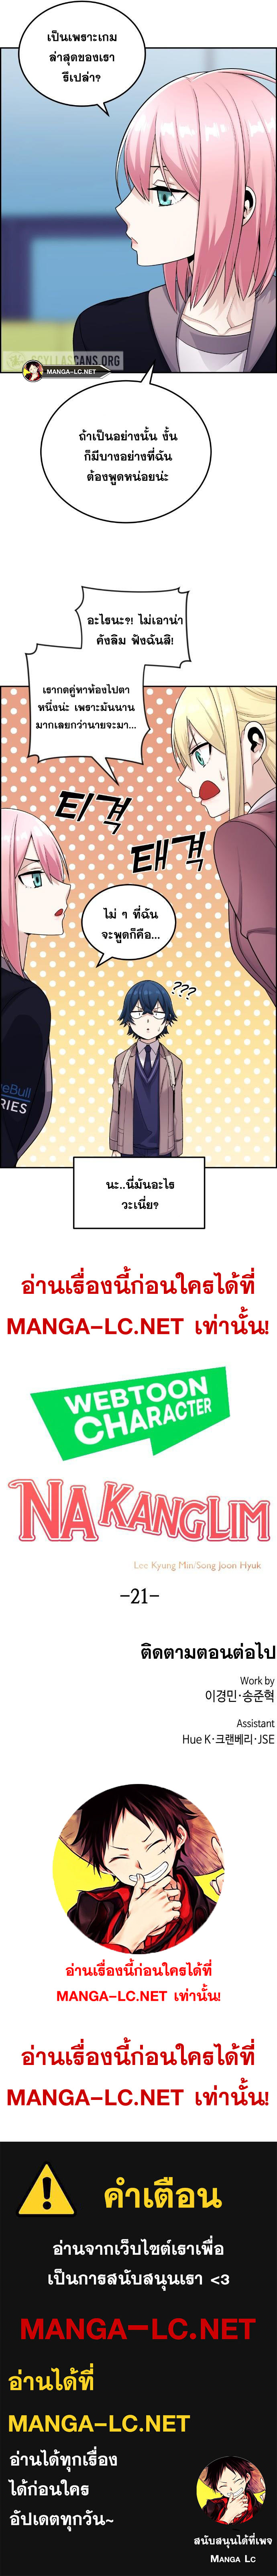 Webtoon Character Na Kang Lim ตอนที่ 21 (11)